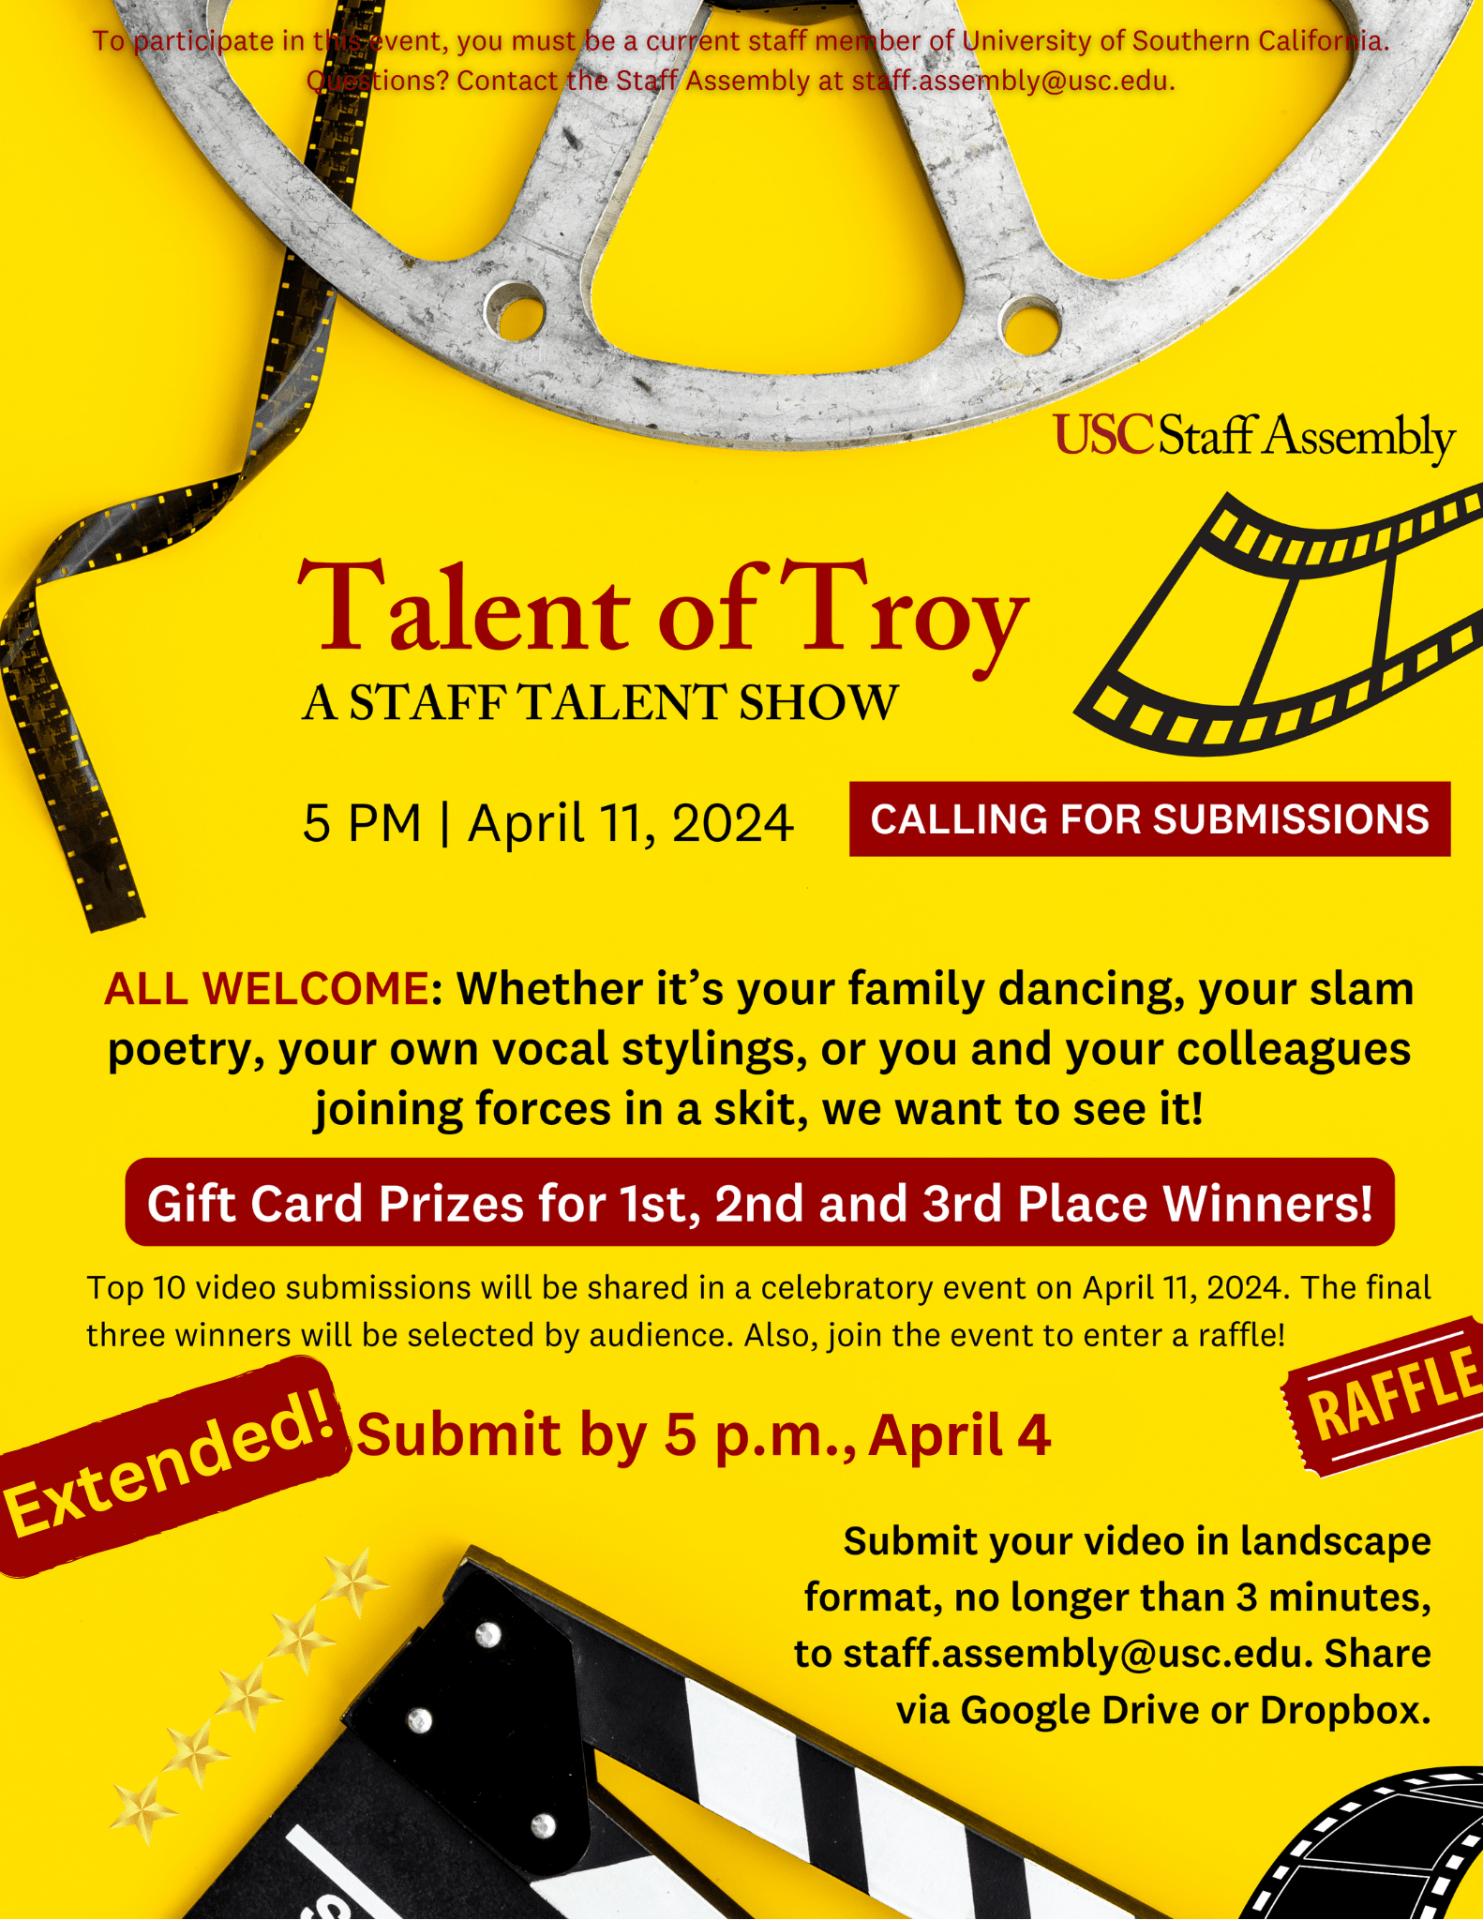 Talent of Troy info sheet